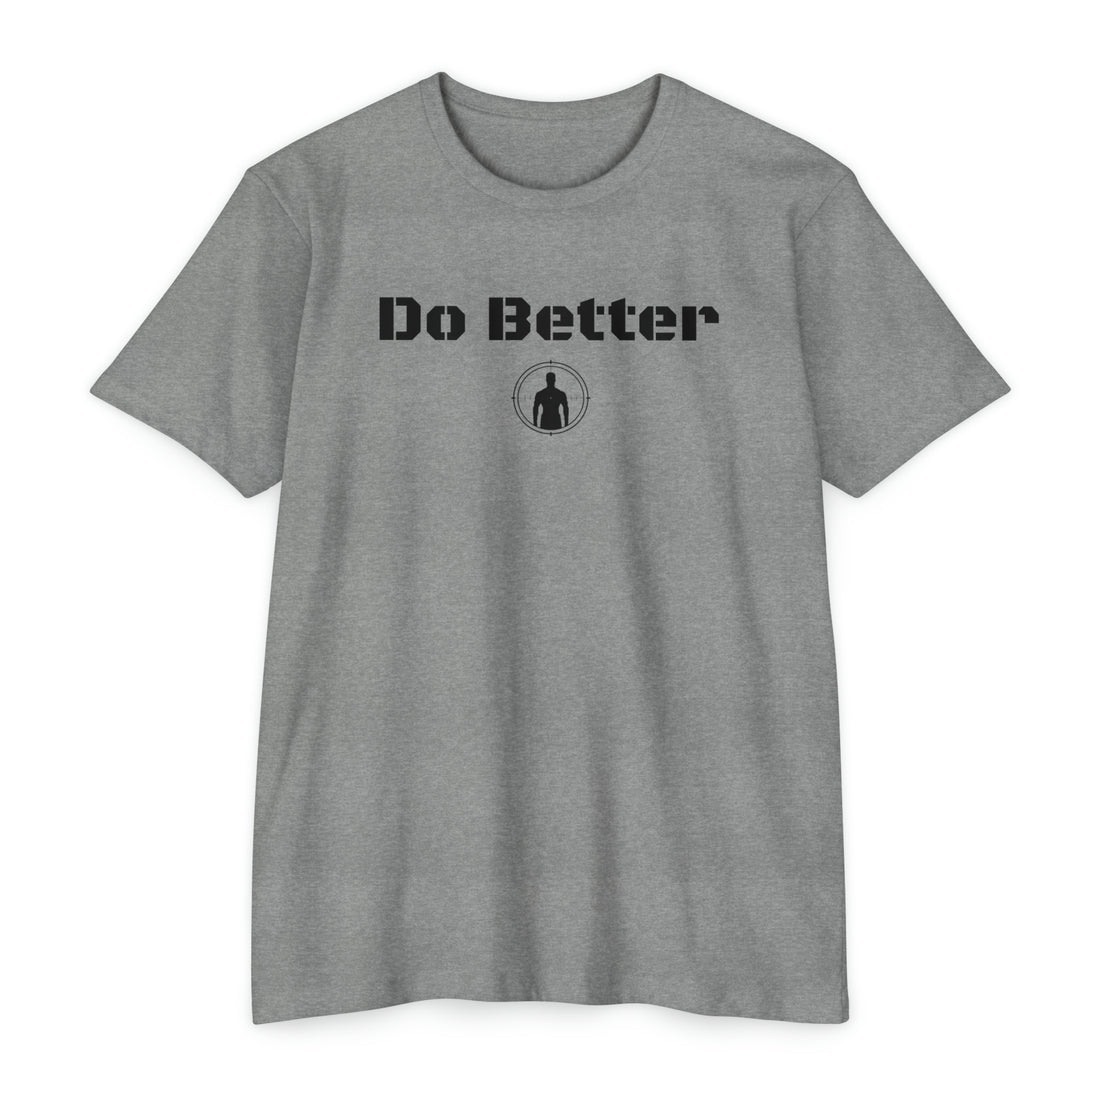 Do Better T-shirt